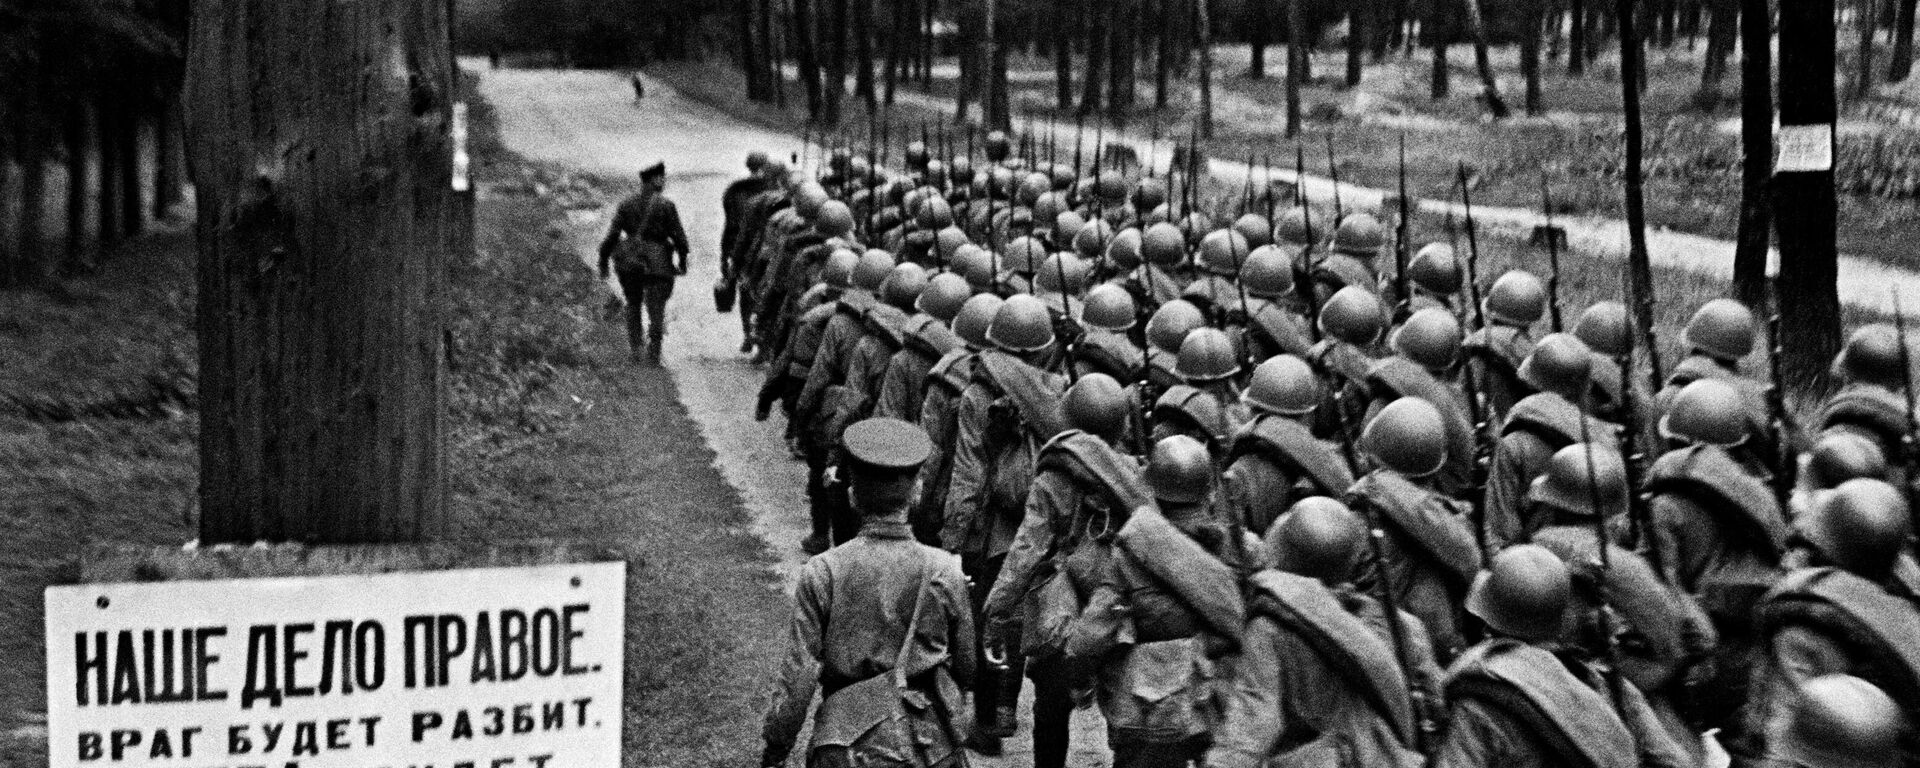 Мобилизация. Колонны бойцов движутся на фронт. Москва, 23 июня 1941 года. - Sputnik Latvija, 1920, 27.06.2021